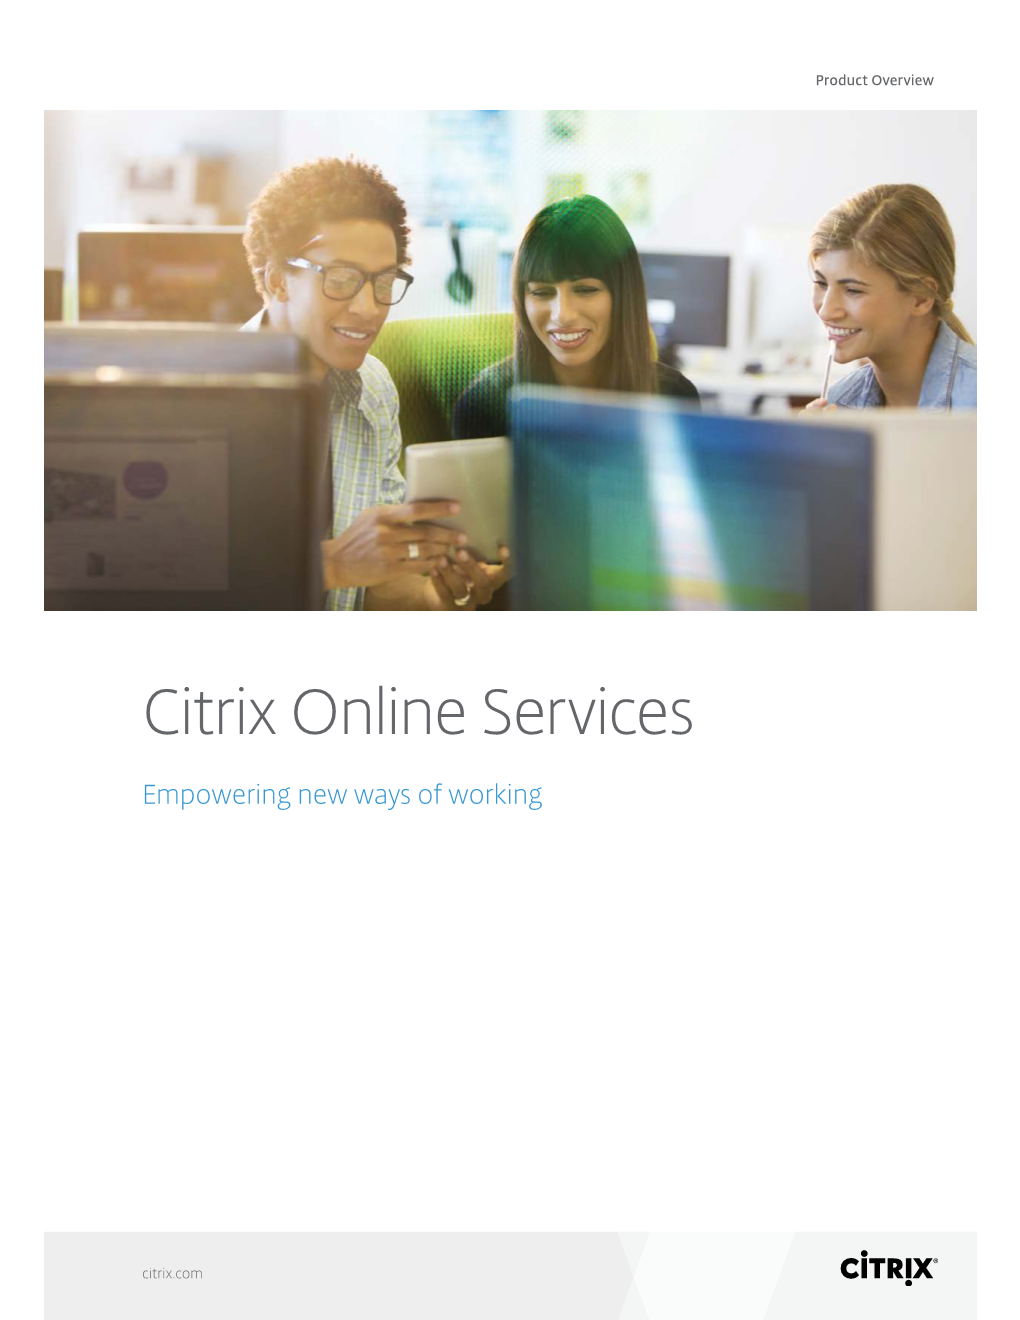 Citrix Online Services Overview